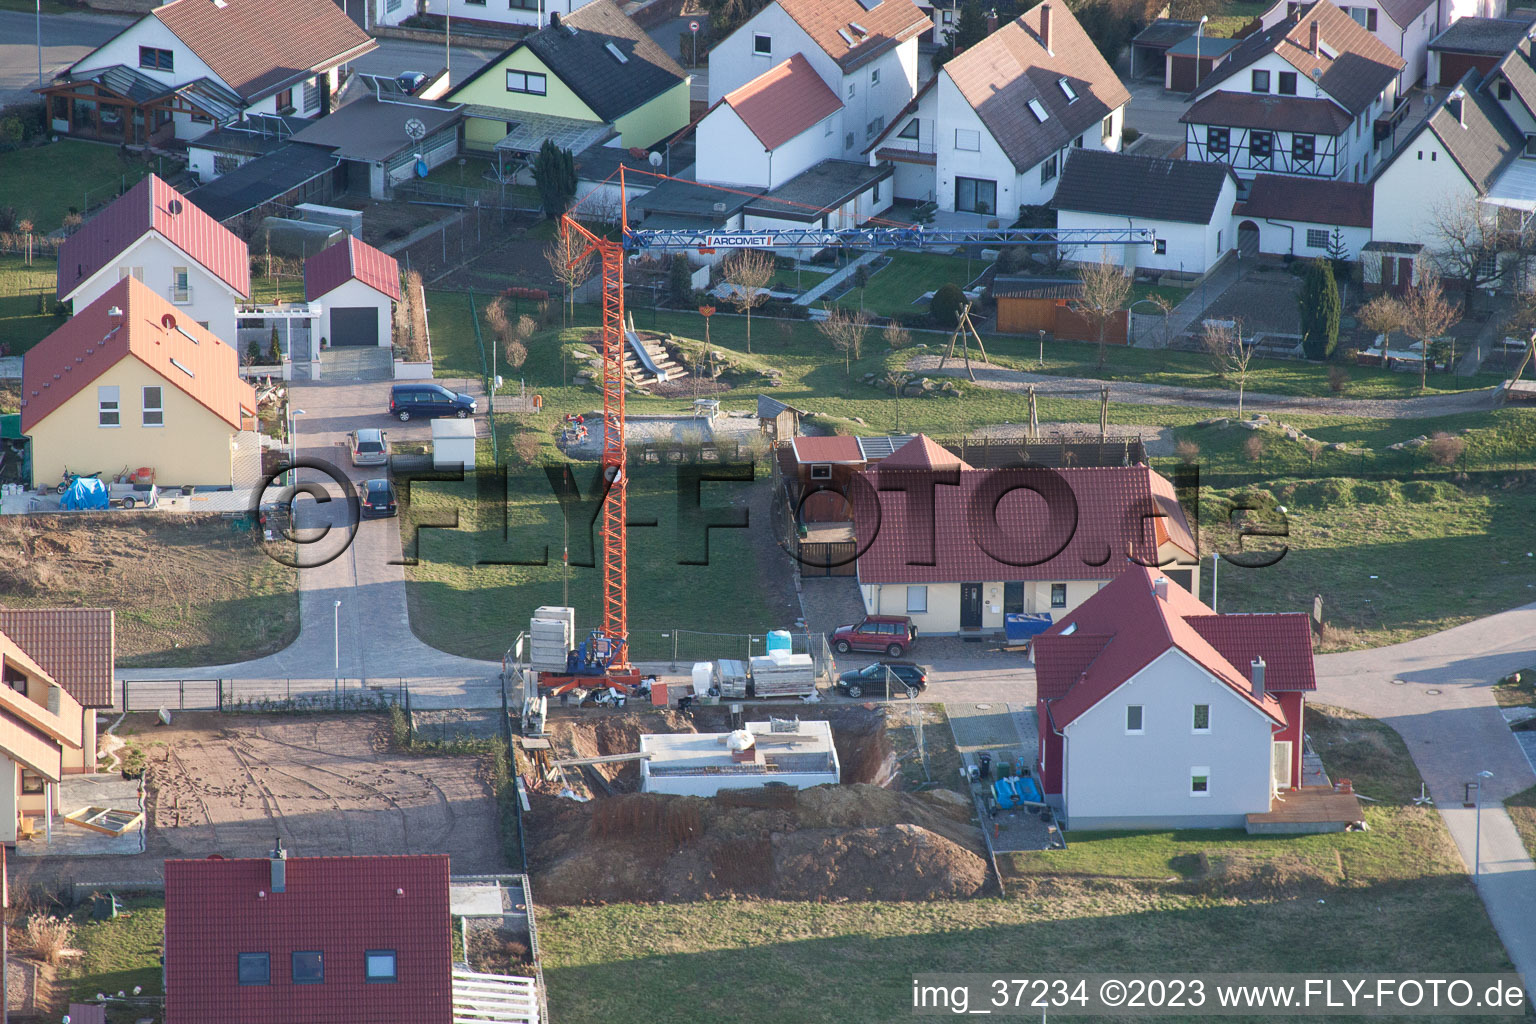 Schaidt Neubaugebiet NO in Wörth am Rhein im Bundesland Rheinland-Pfalz, Deutschland aus der Luft betrachtet